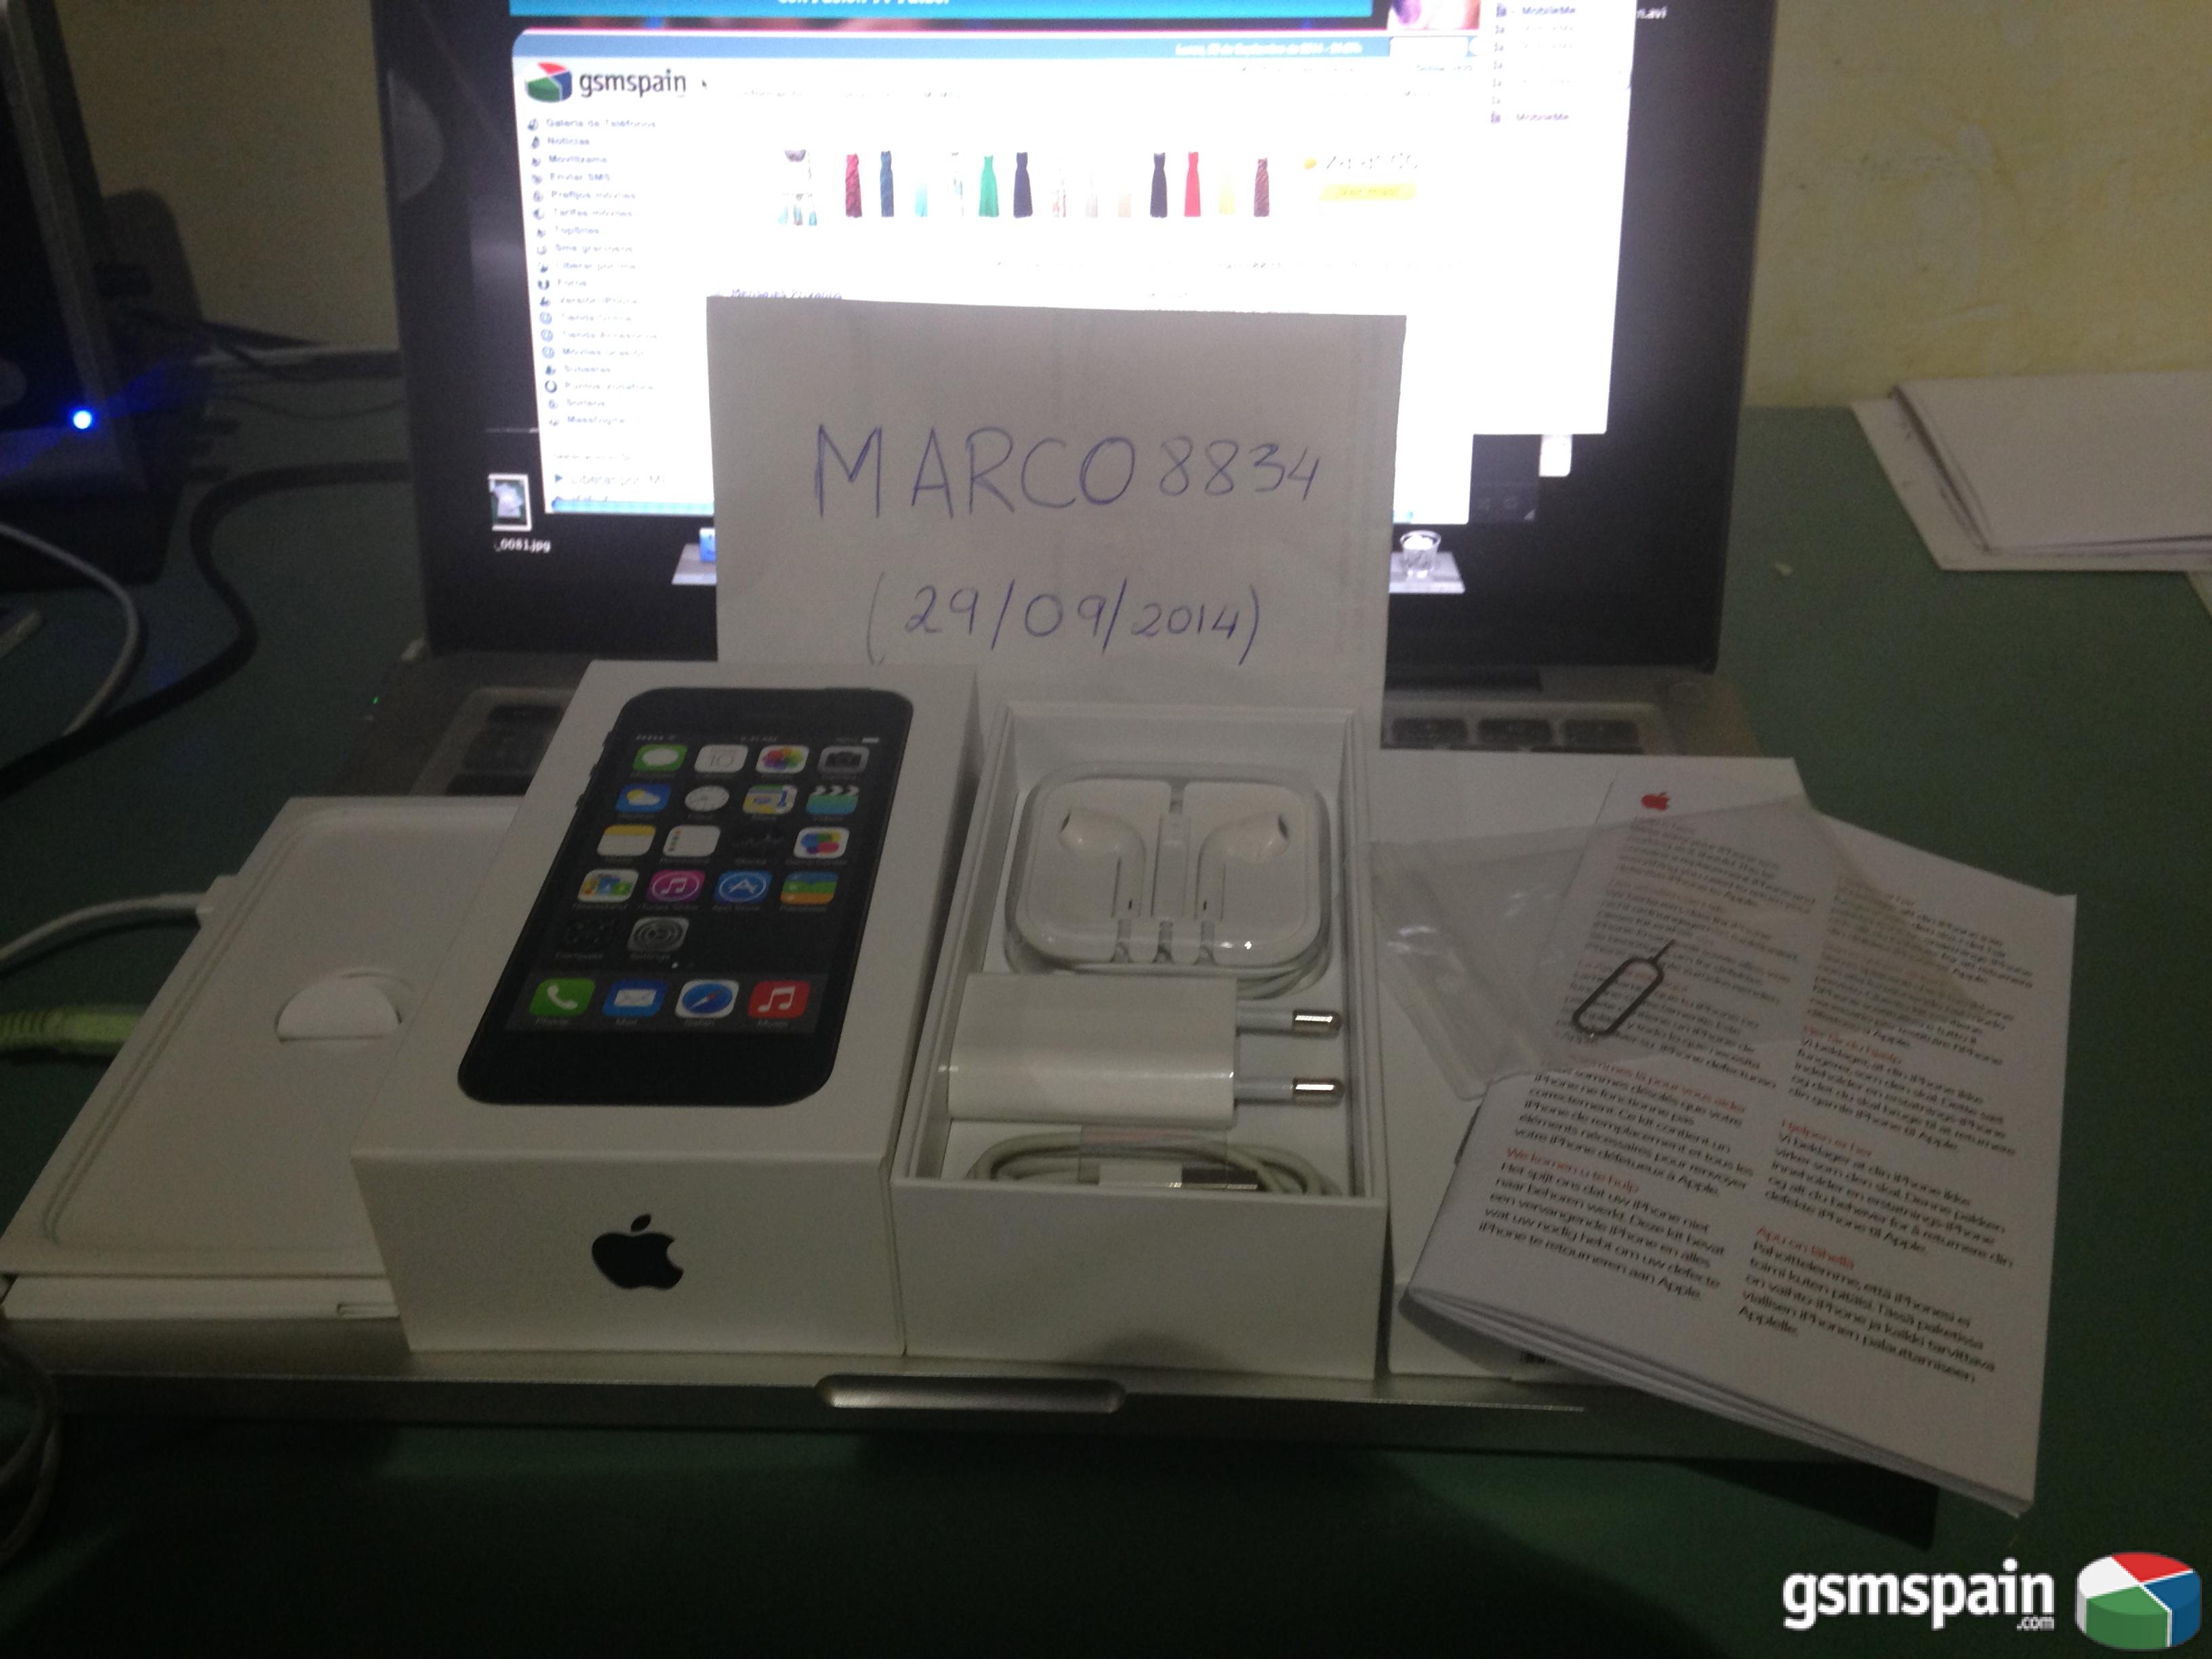 [VENDO] iPhone 5S 16gb (Space Gray). Nuevo, libre, factura y garanta